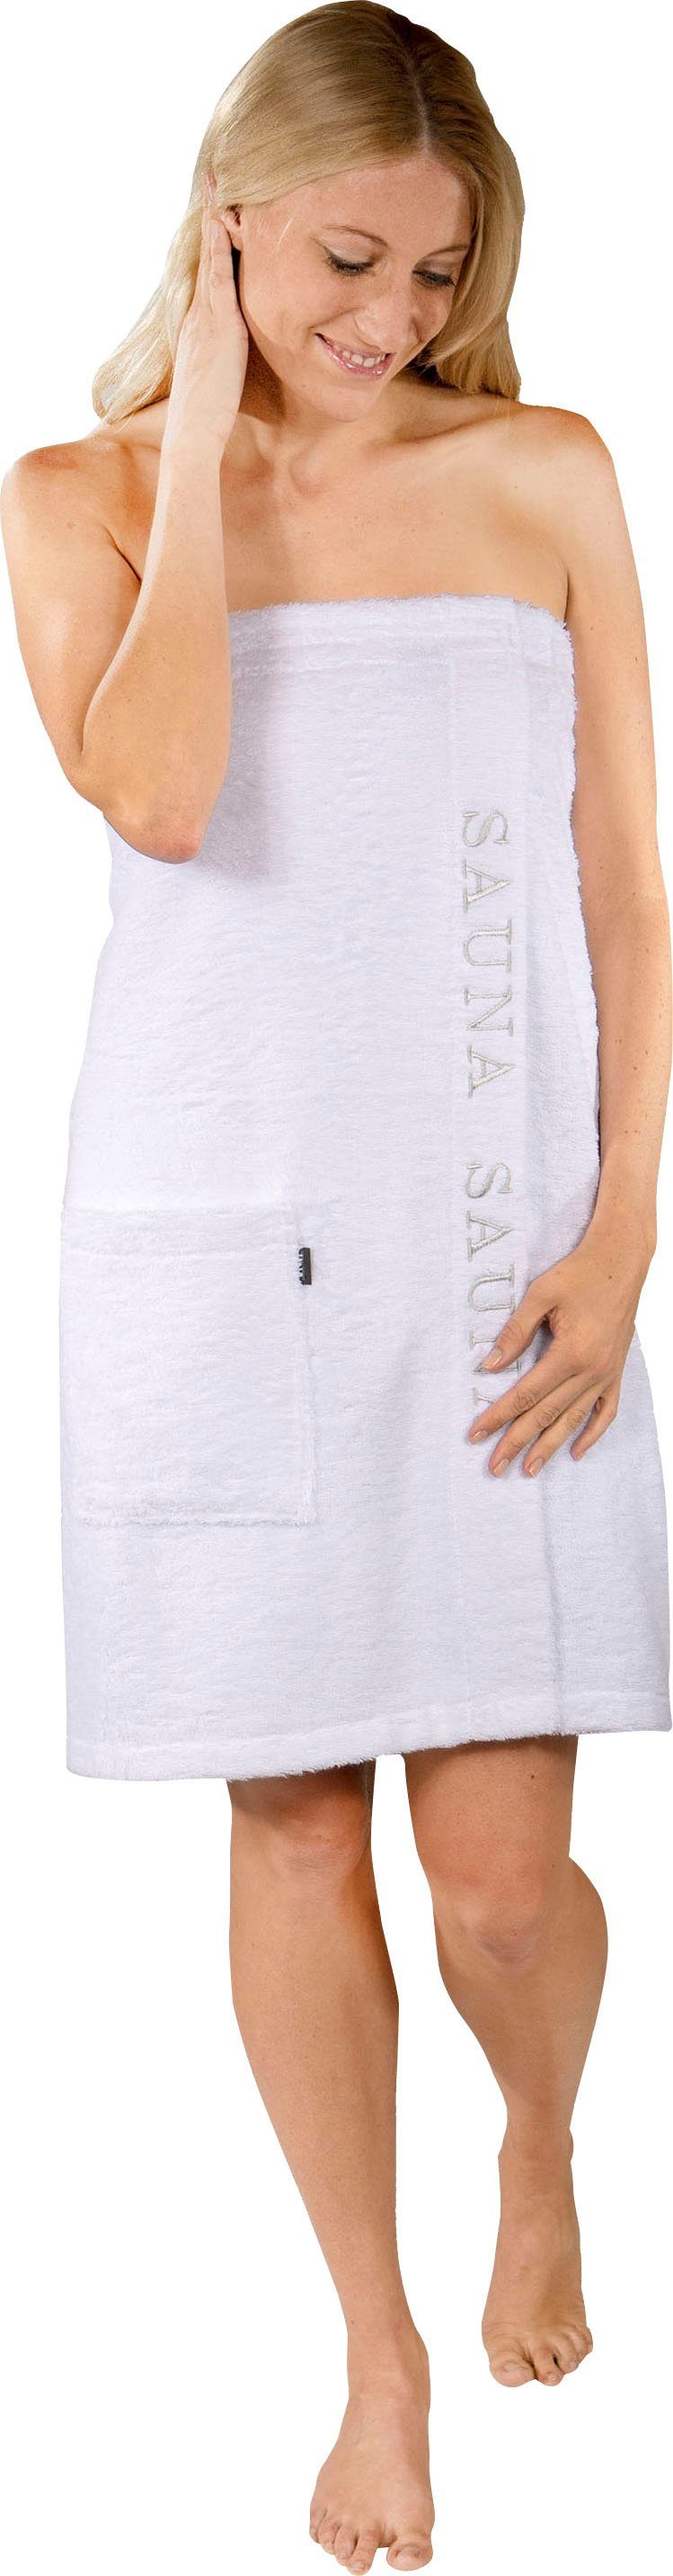 Wewo fashion Kilt 9534, Langform, Damen, Klettverschluss mit Baumwolle, für weiß Sauna & Saunakilt Stickerei Klettverschluss